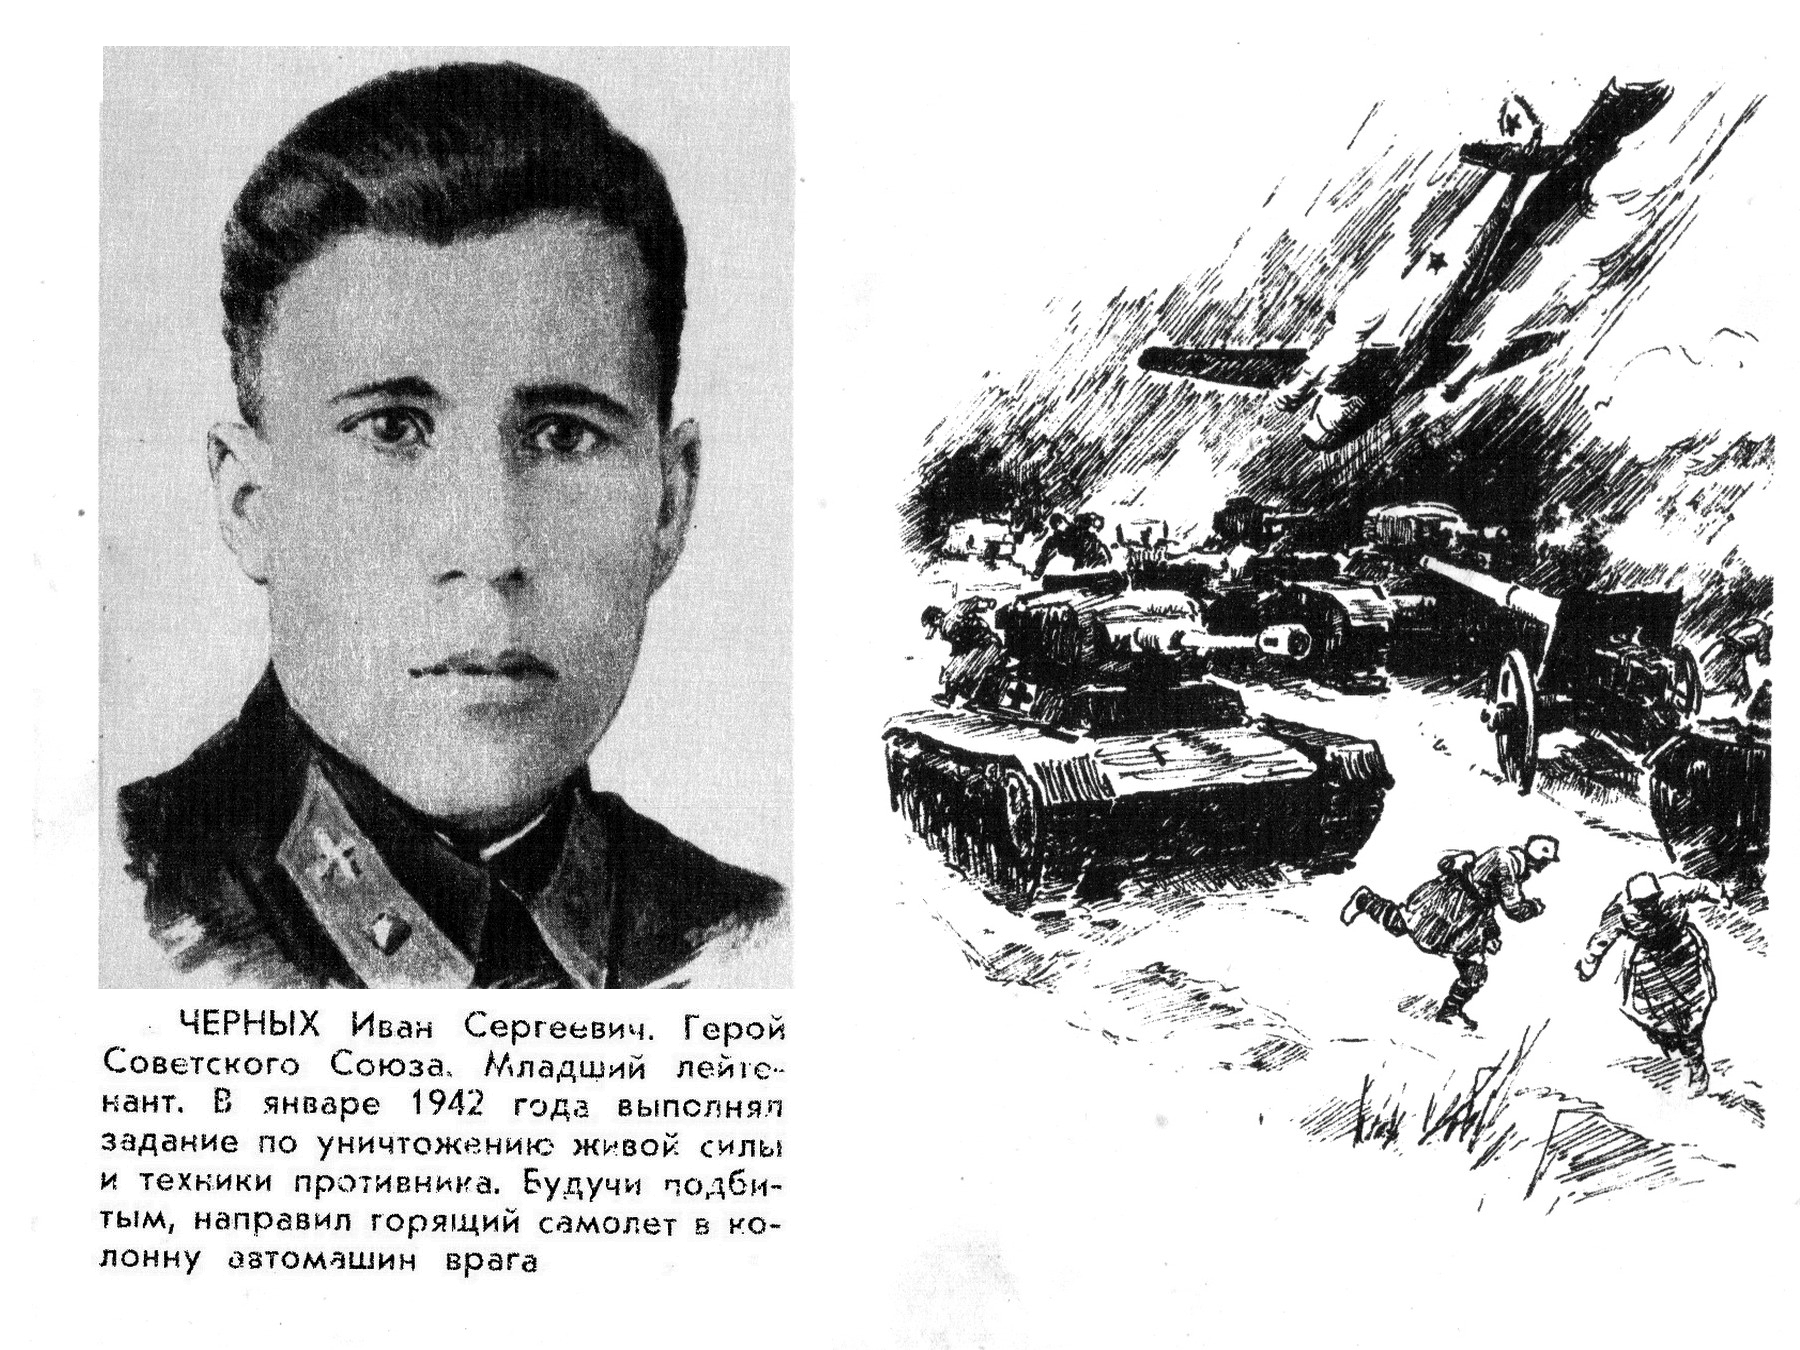 Герои советского Союза Великой Отечественной войны посмертно